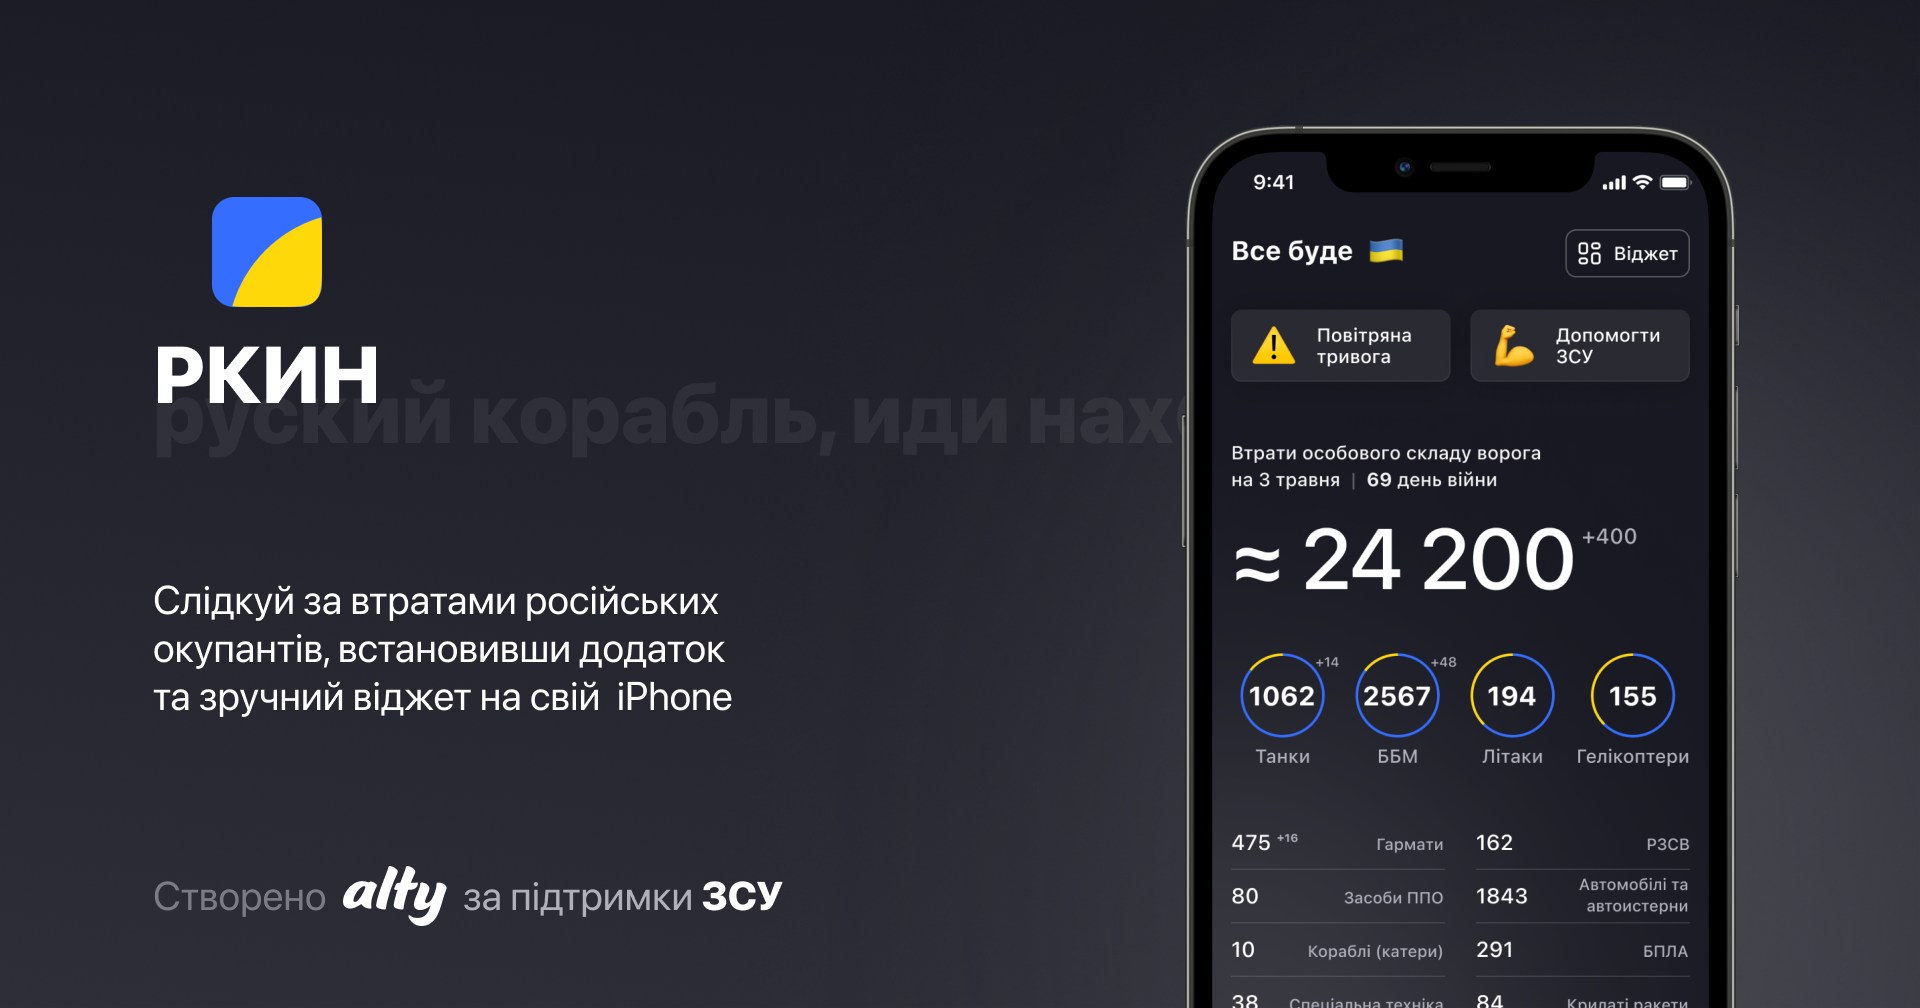 Apple grozi usunięciem z App Store ukraińskiej aplikacji RKIN z danymi o stratach rosyjskich najeźdźców